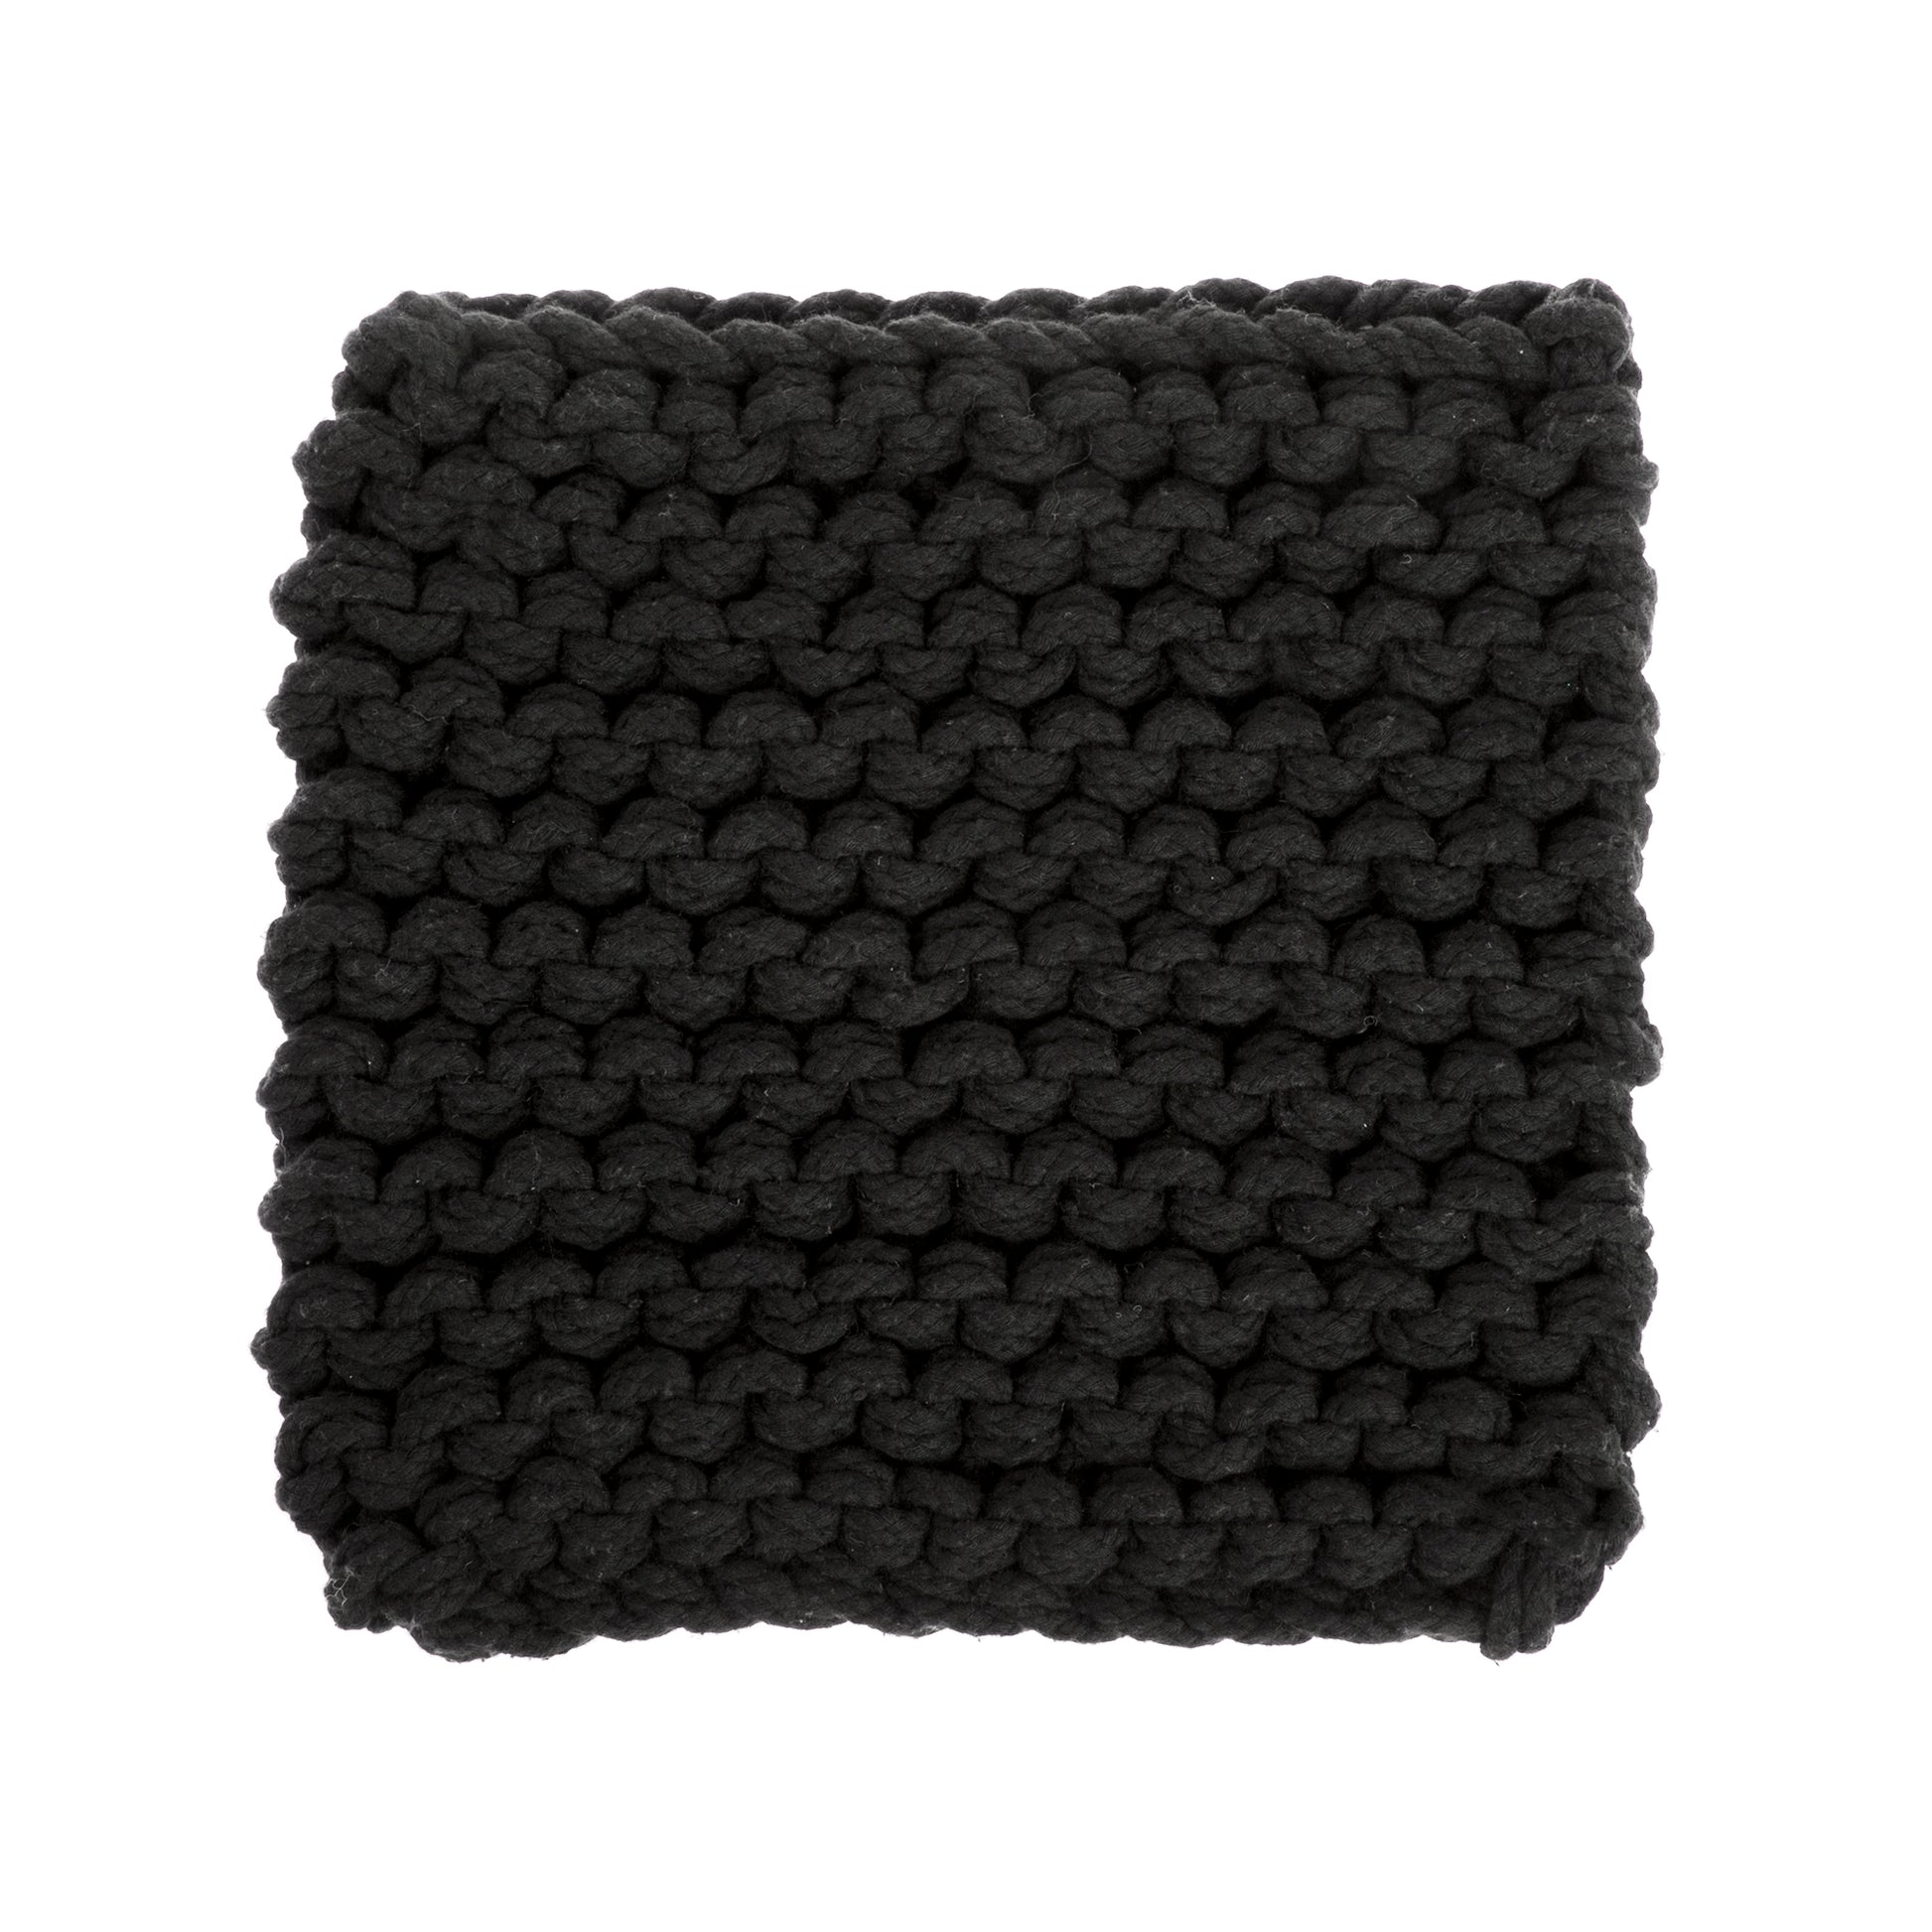 amostra de pontos / Tapete em tricô artesanal Preto, com fio 100% algodão. Dimensões: Largura - 150cm; Comprimento - 200cm. 